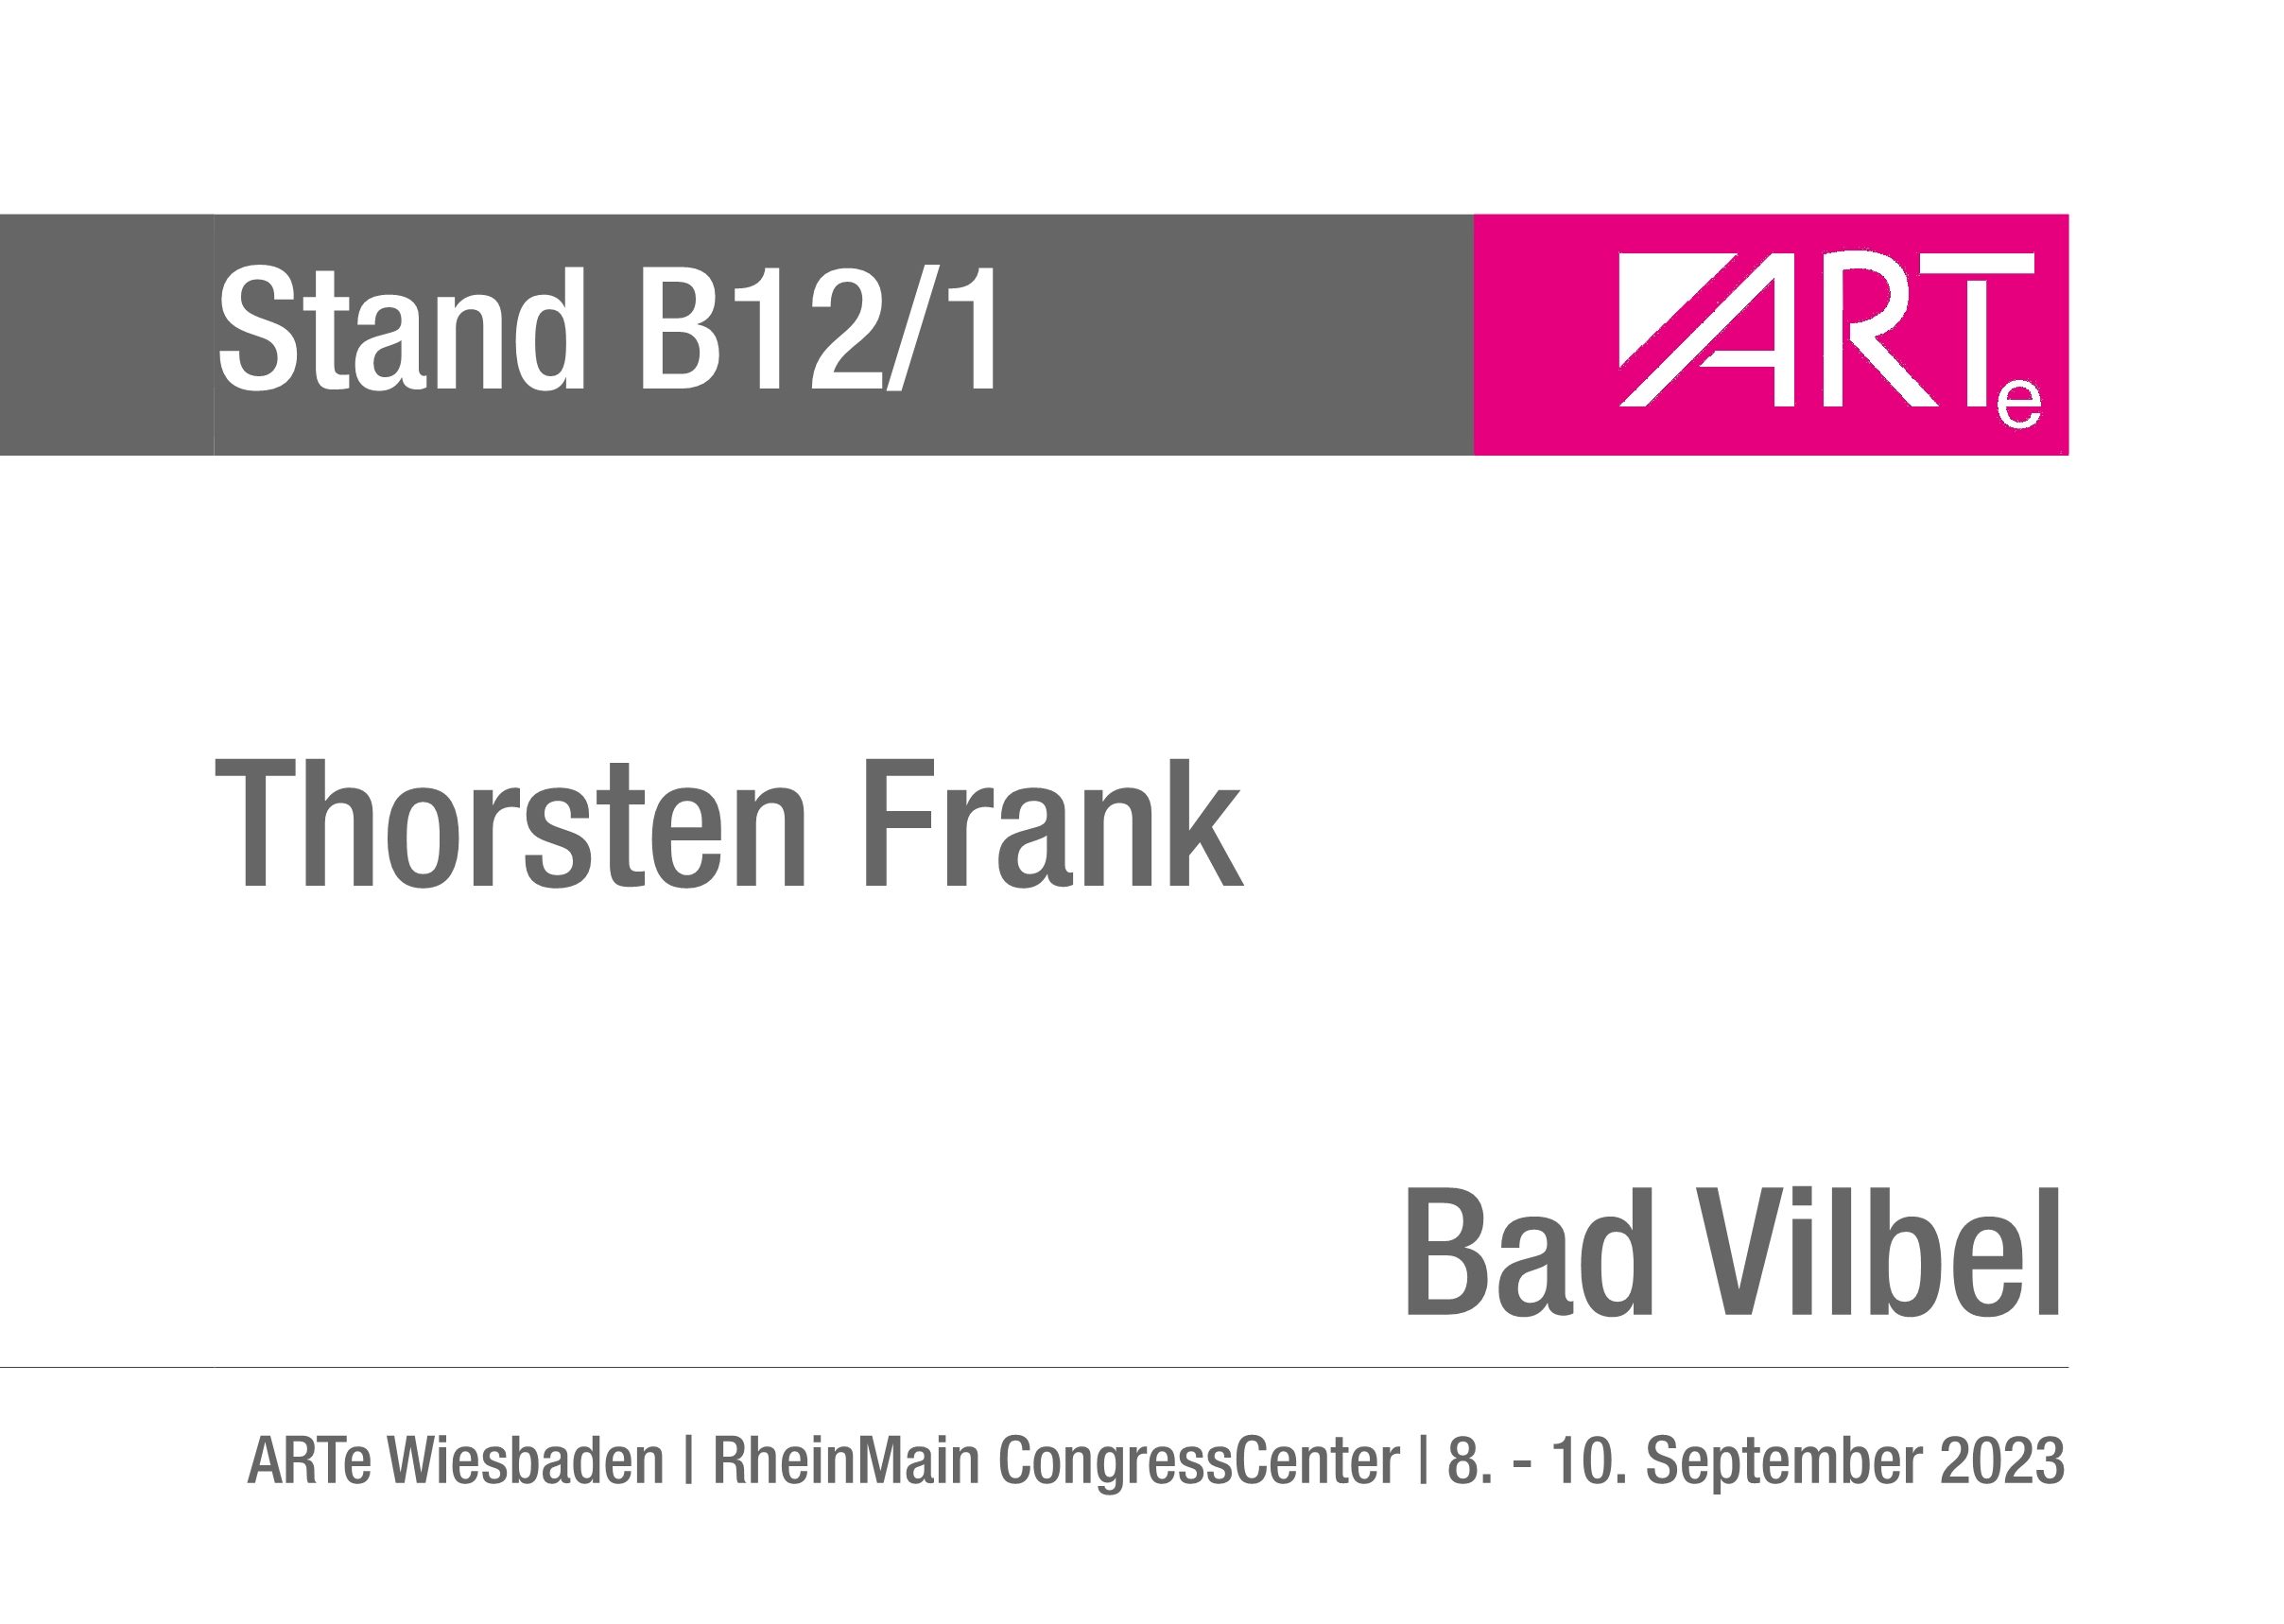 Frank_Thorsten_Standschild_Wiesbaden_2023